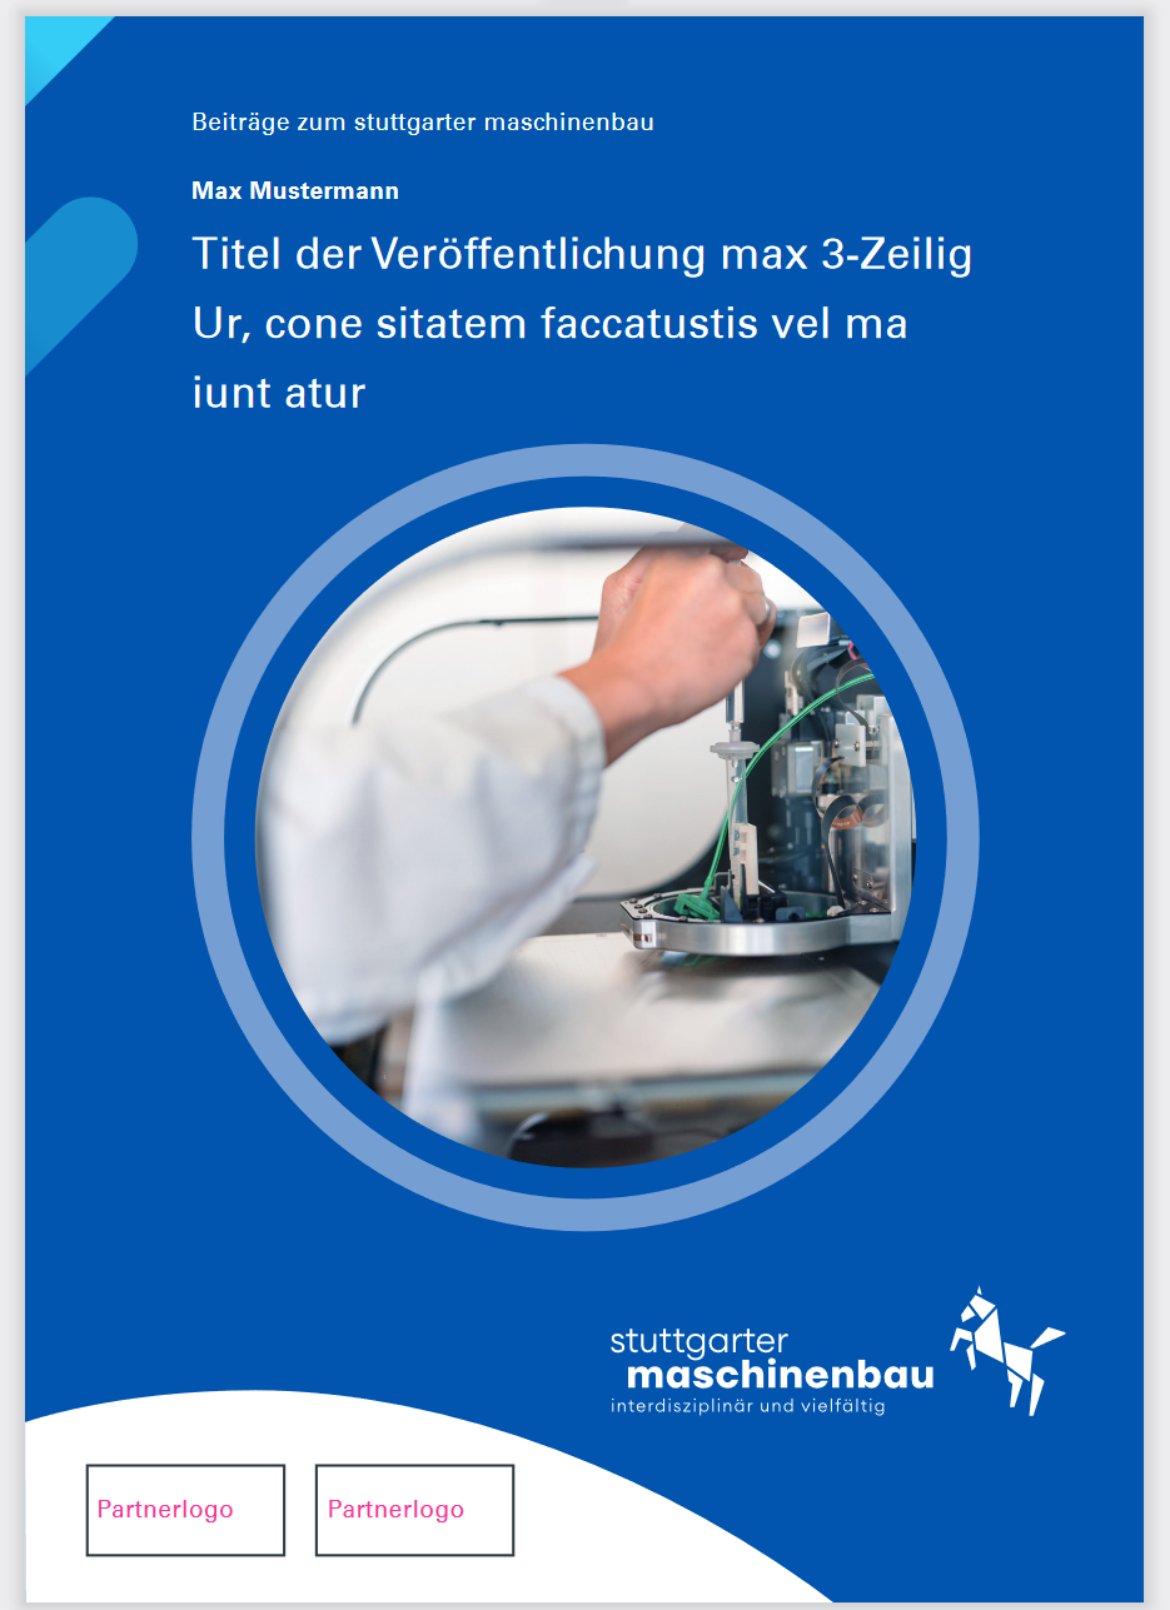 Beispiel-Cover Schriftenreihe "Stuttgarter Maschinenbau"